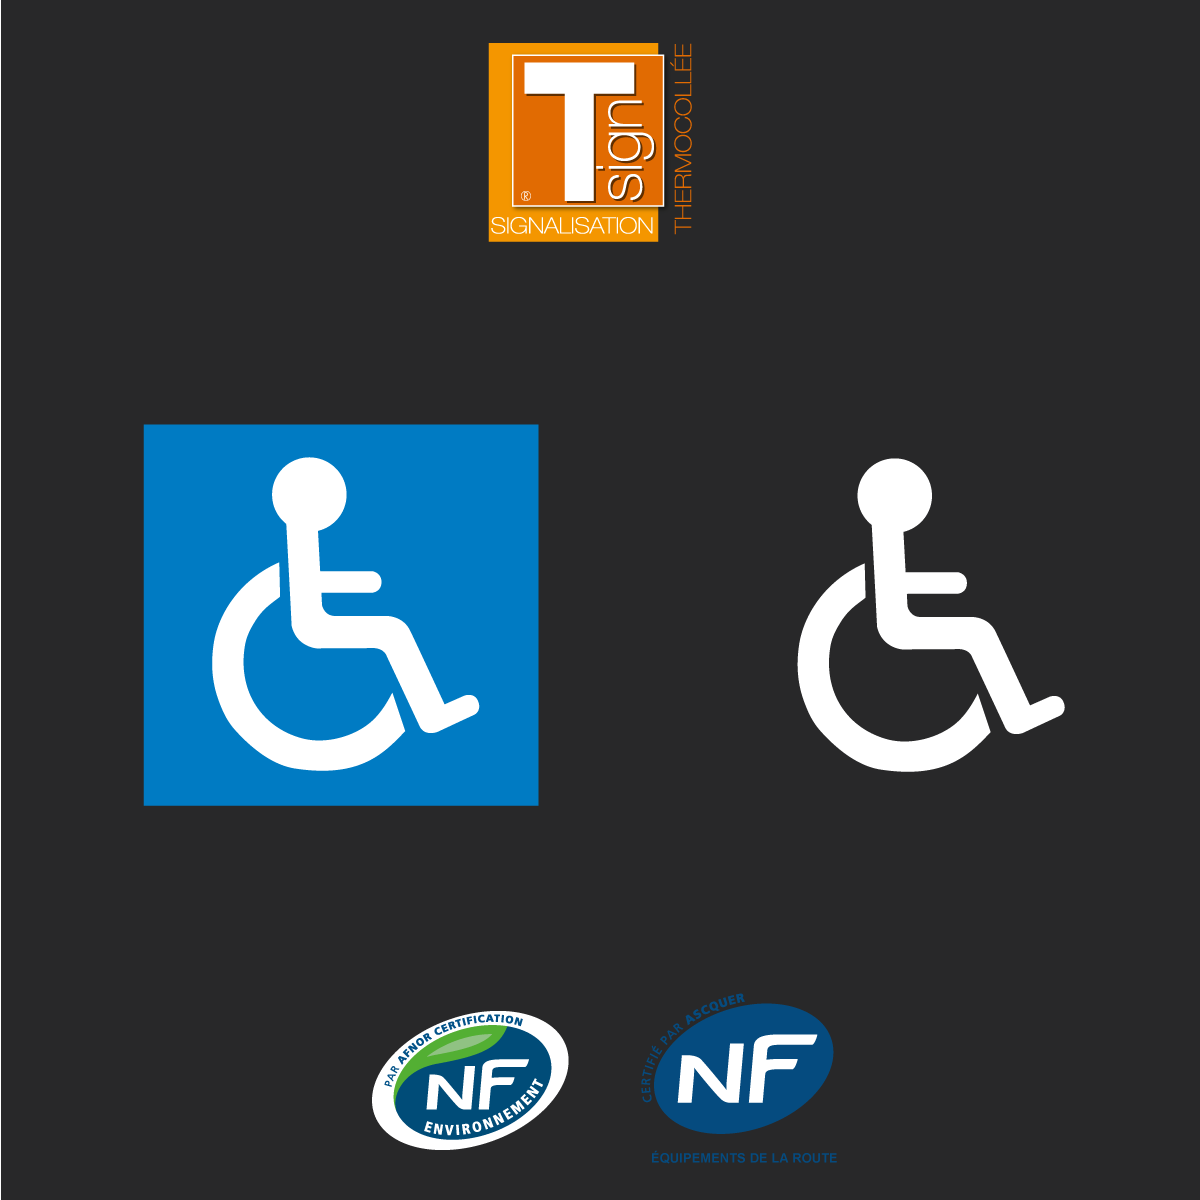 Signalisation - Places Réservées - Logo Pmr Symbole Handicap